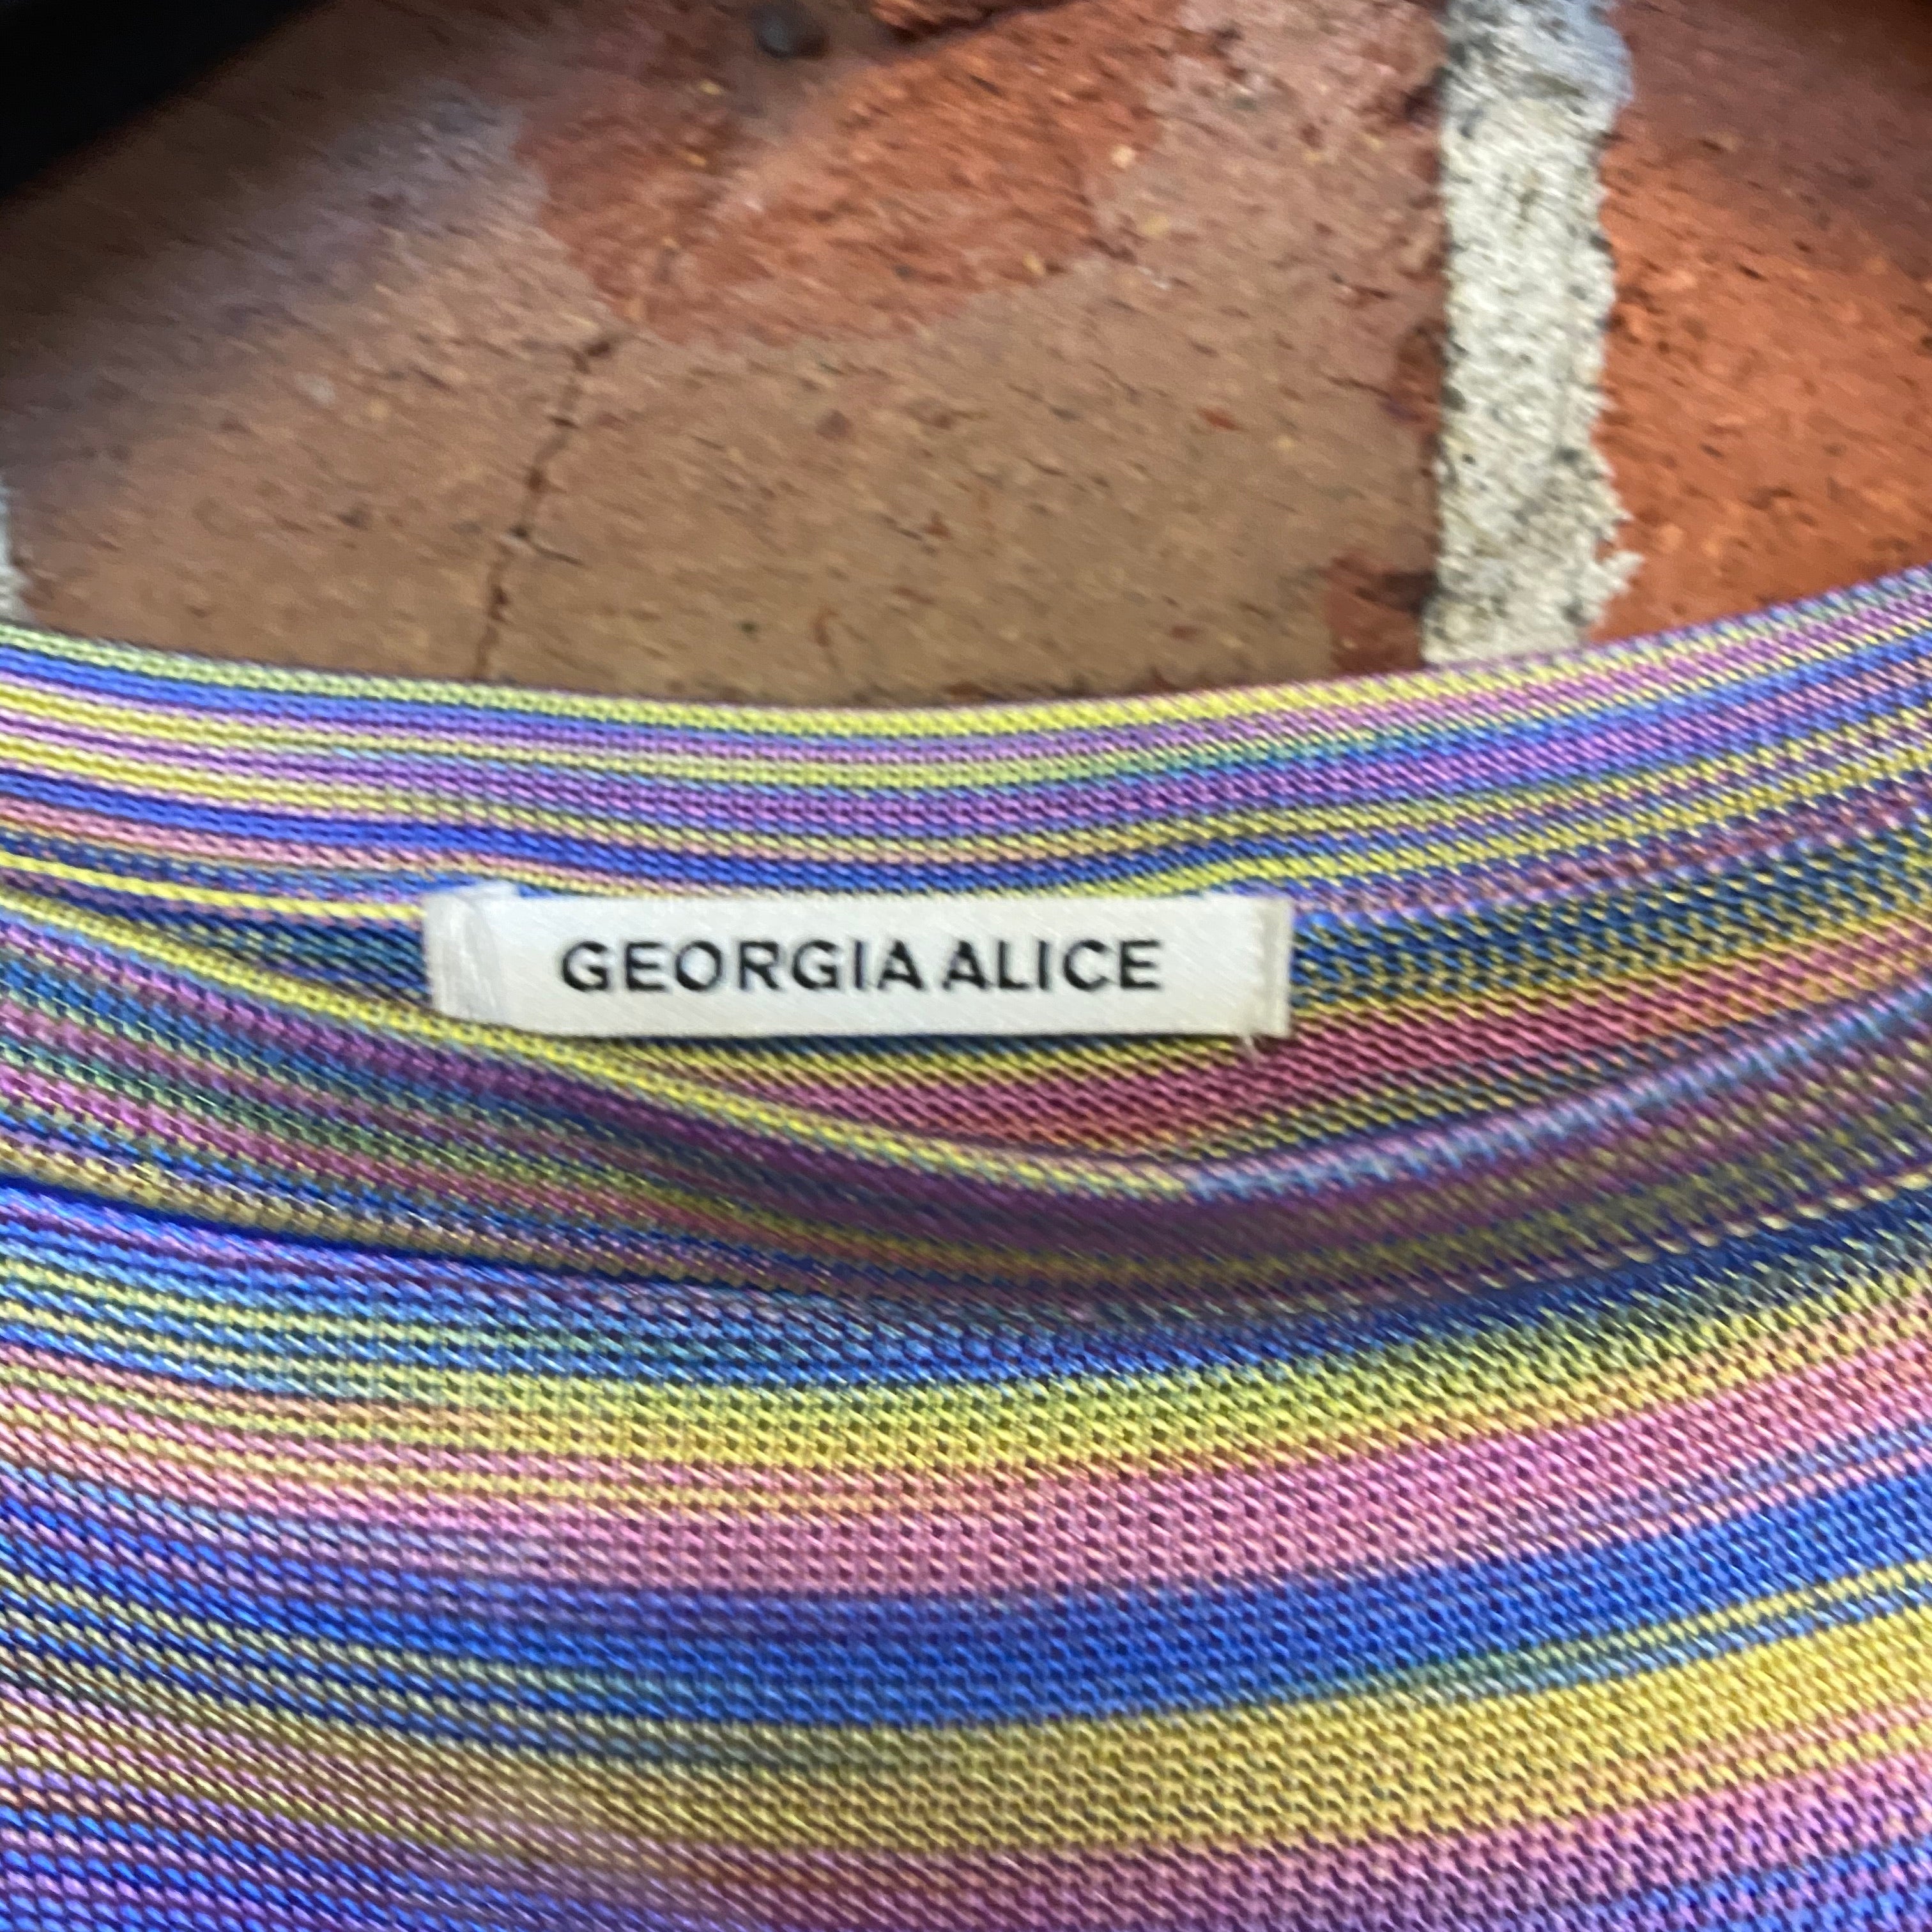 GEORGIA ALICE knit dress